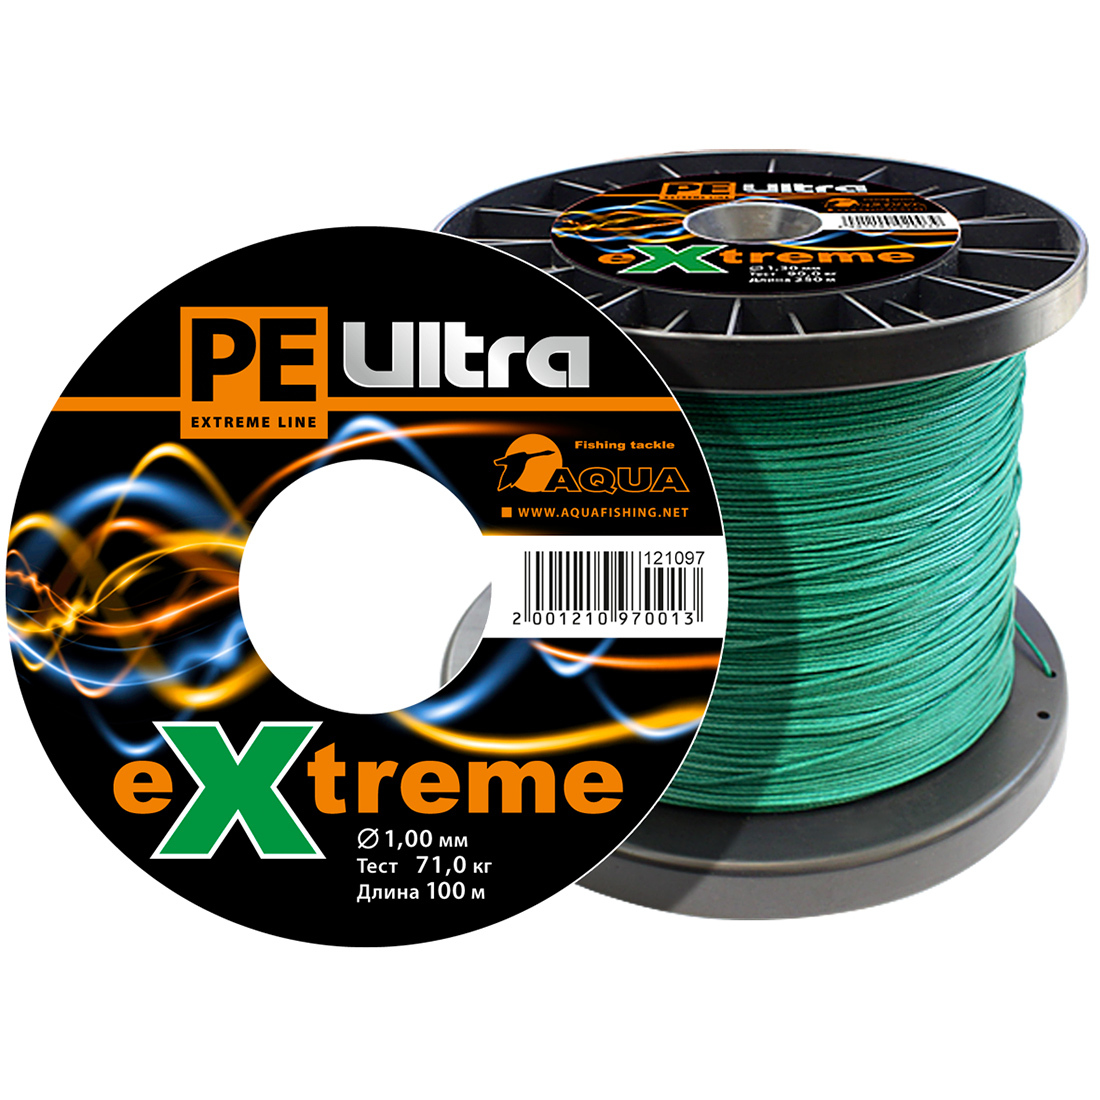 Плетеный Шнур Для Рыбалки Aqua Pe Ultra Extreme 1,00mm (Цвет Зеленый) 100m